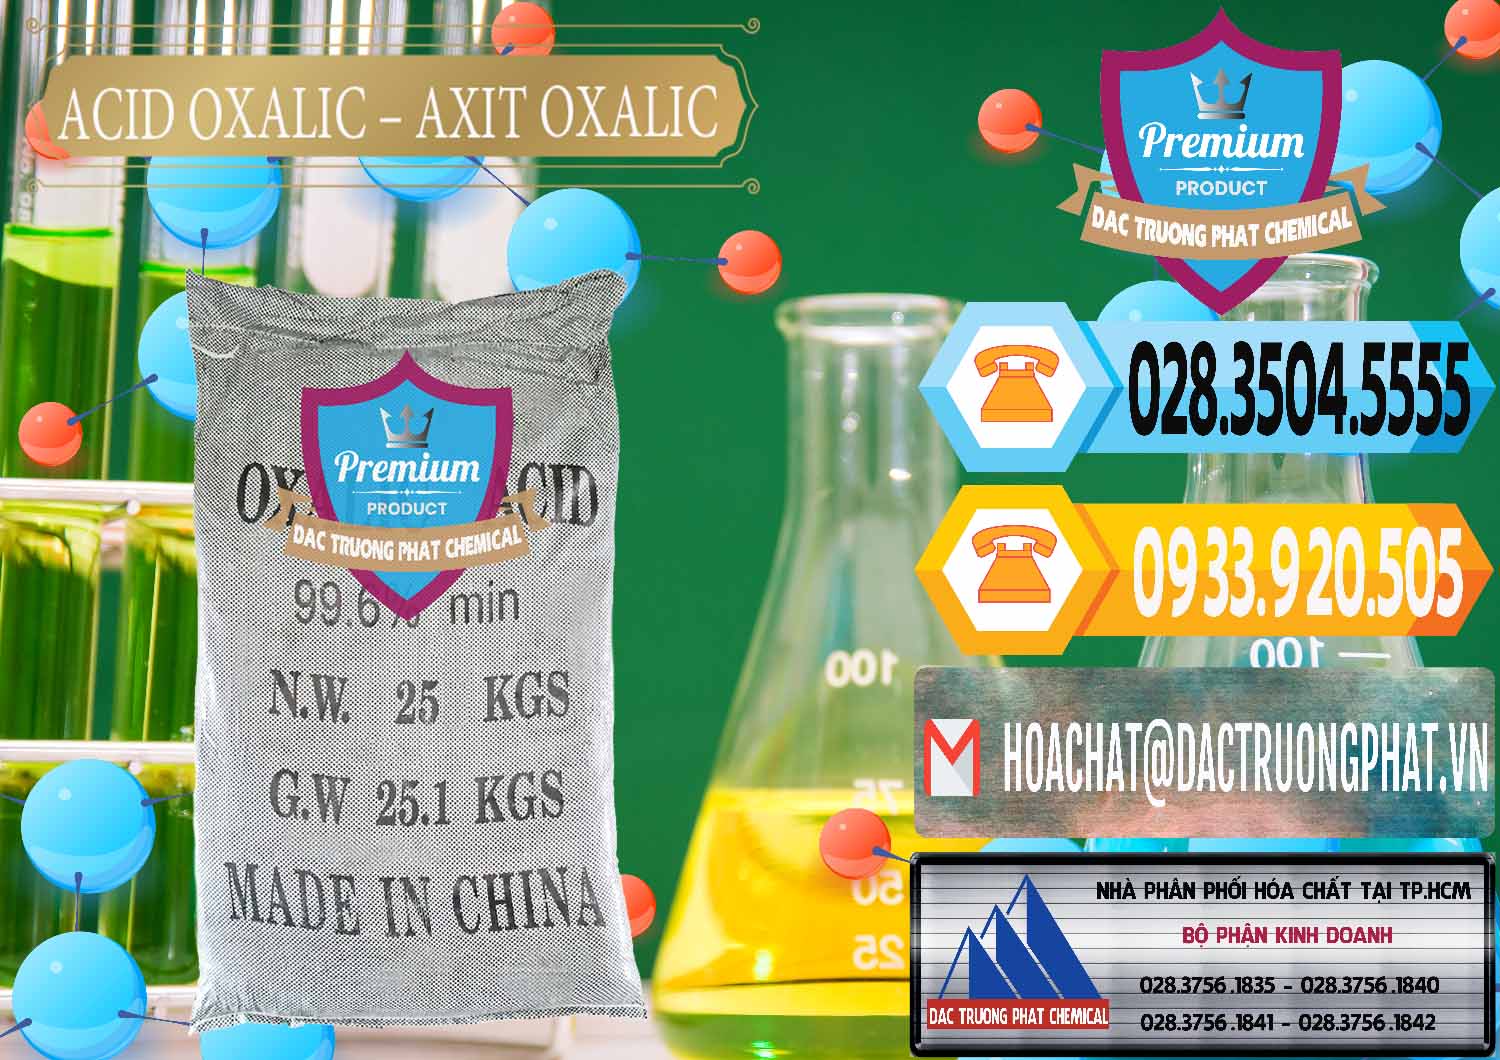 Nơi chuyên bán - cung cấp Acid Oxalic – Axit Oxalic 99.6% Trung Quốc China - 0014 - Cung cấp ( kinh doanh ) hóa chất tại TP.HCM - hoachattayrua.net